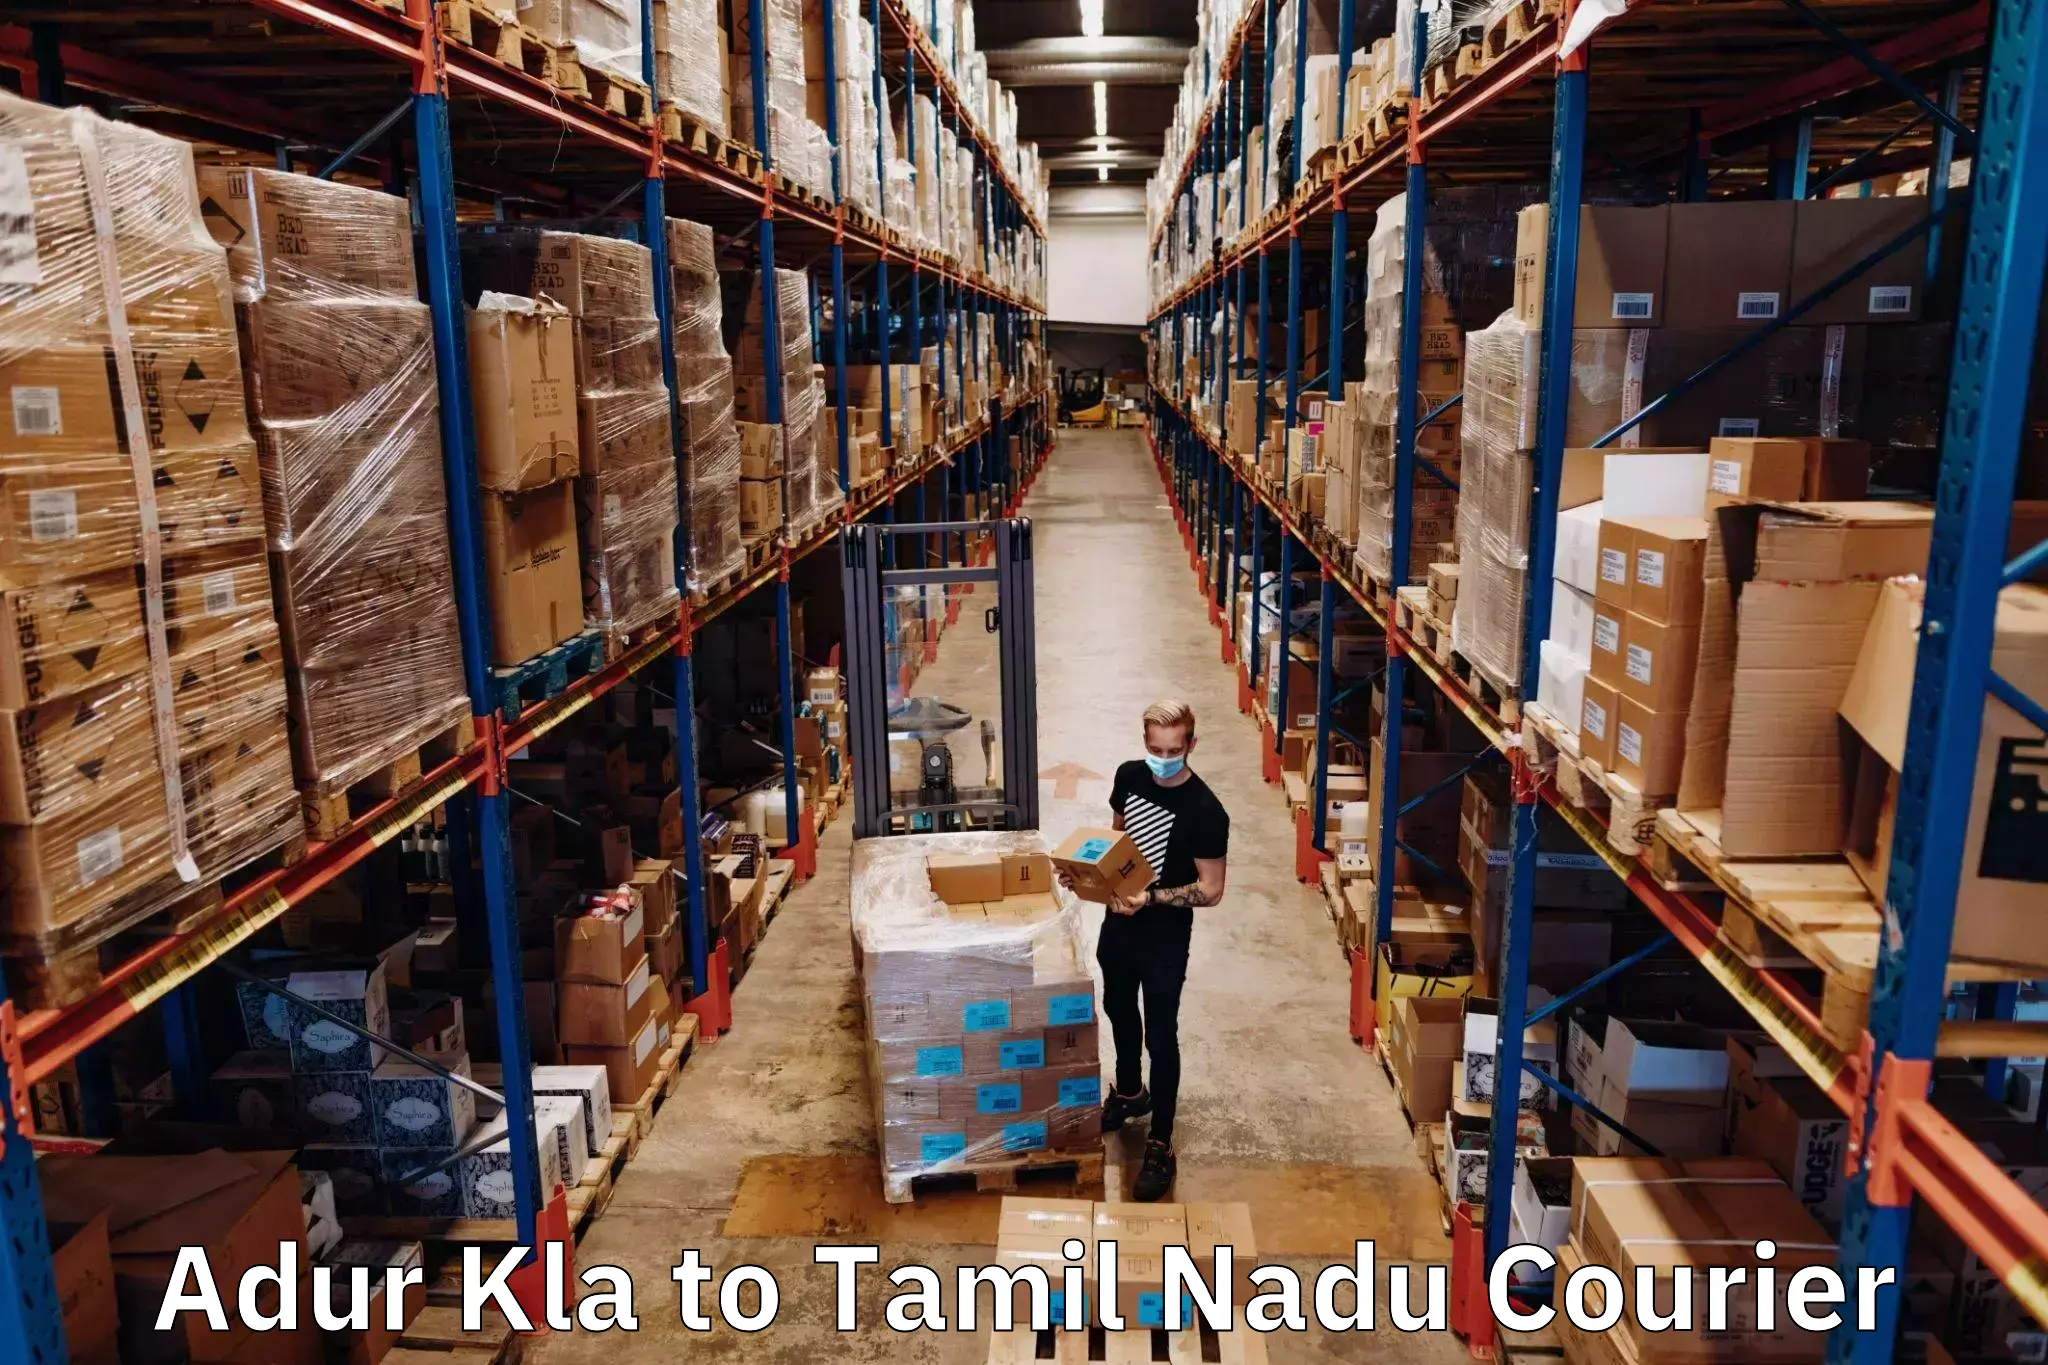 International parcel service Adur Kla to Thiruvarur